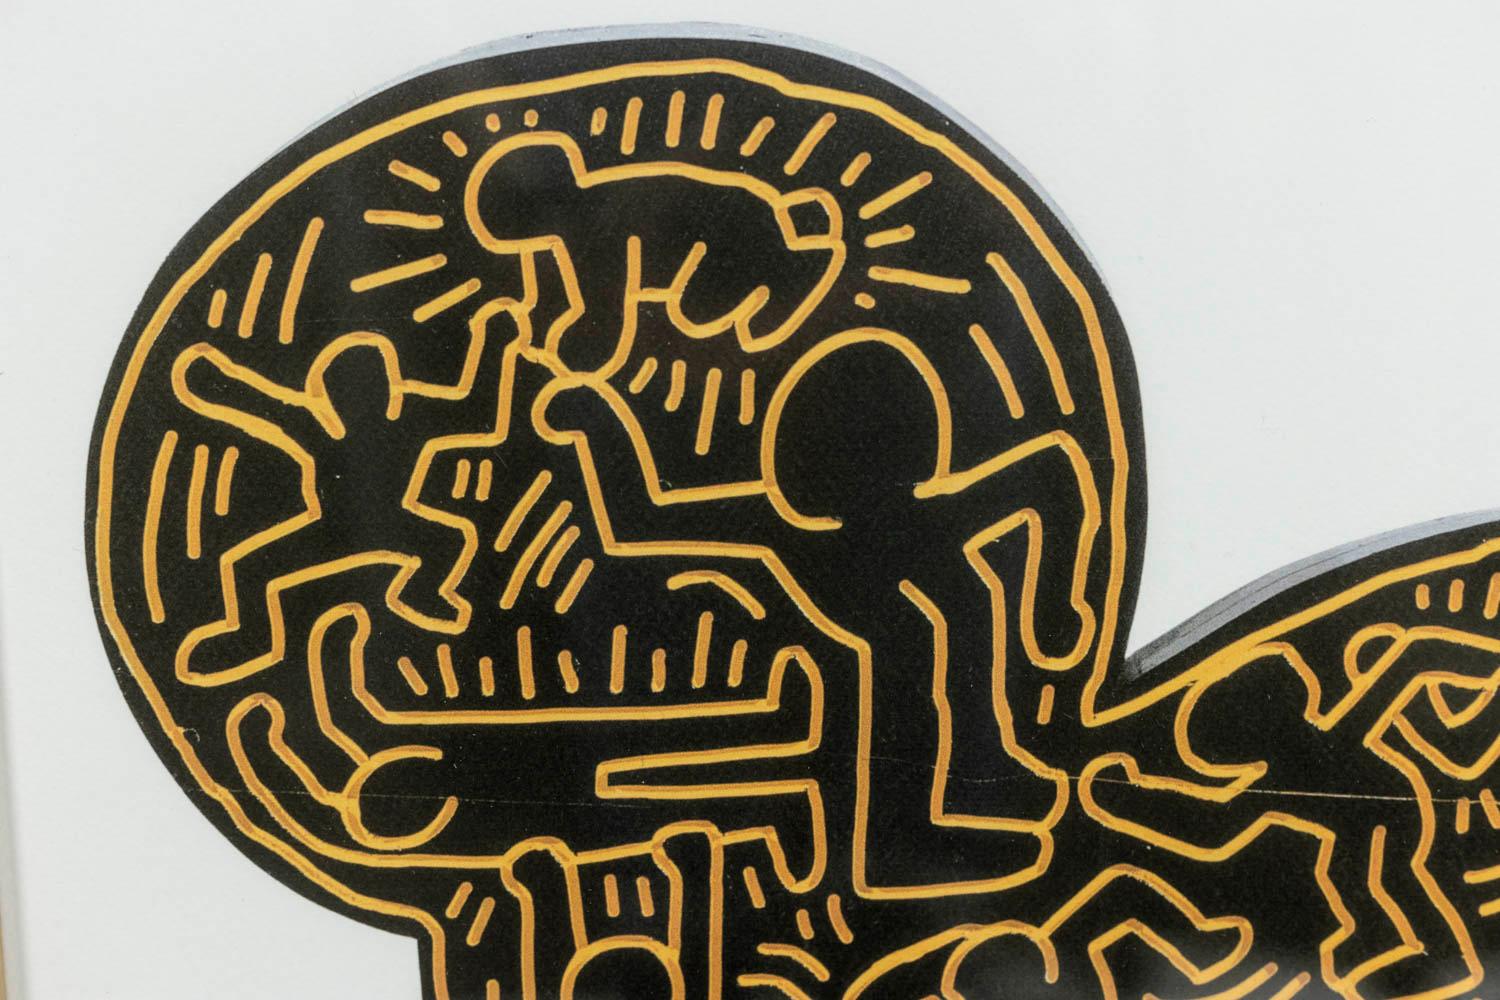 Keith Haring, signé et numéroté.

Lithographie représentant des personnages, dans les tons jaune et noir, dans son cadre en chêne blond.

Numéroté 12/150.

Travail américain réalisé dans les années 1990.